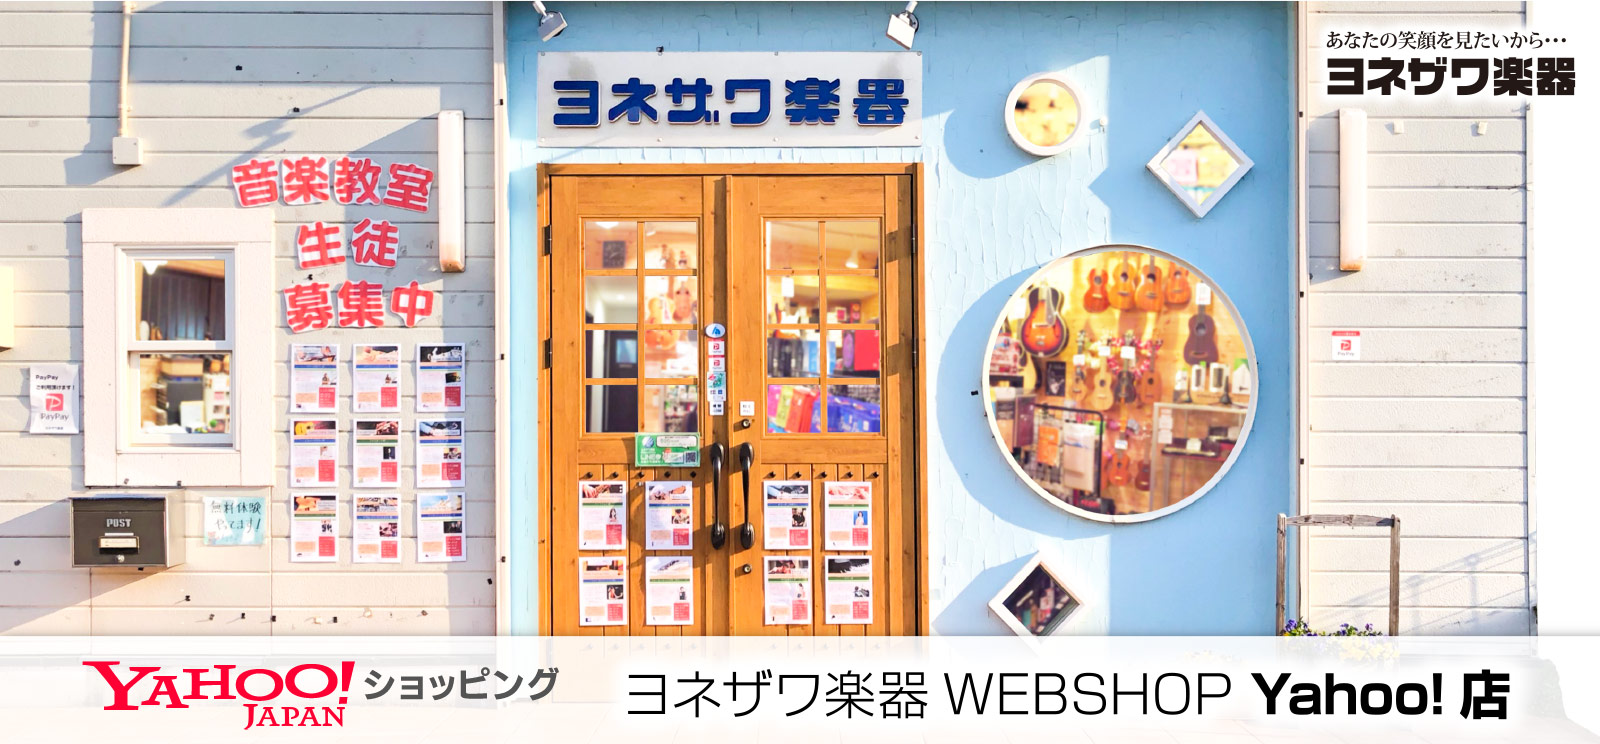 ヨネザワ楽器WEBSHOP Yahoo!店